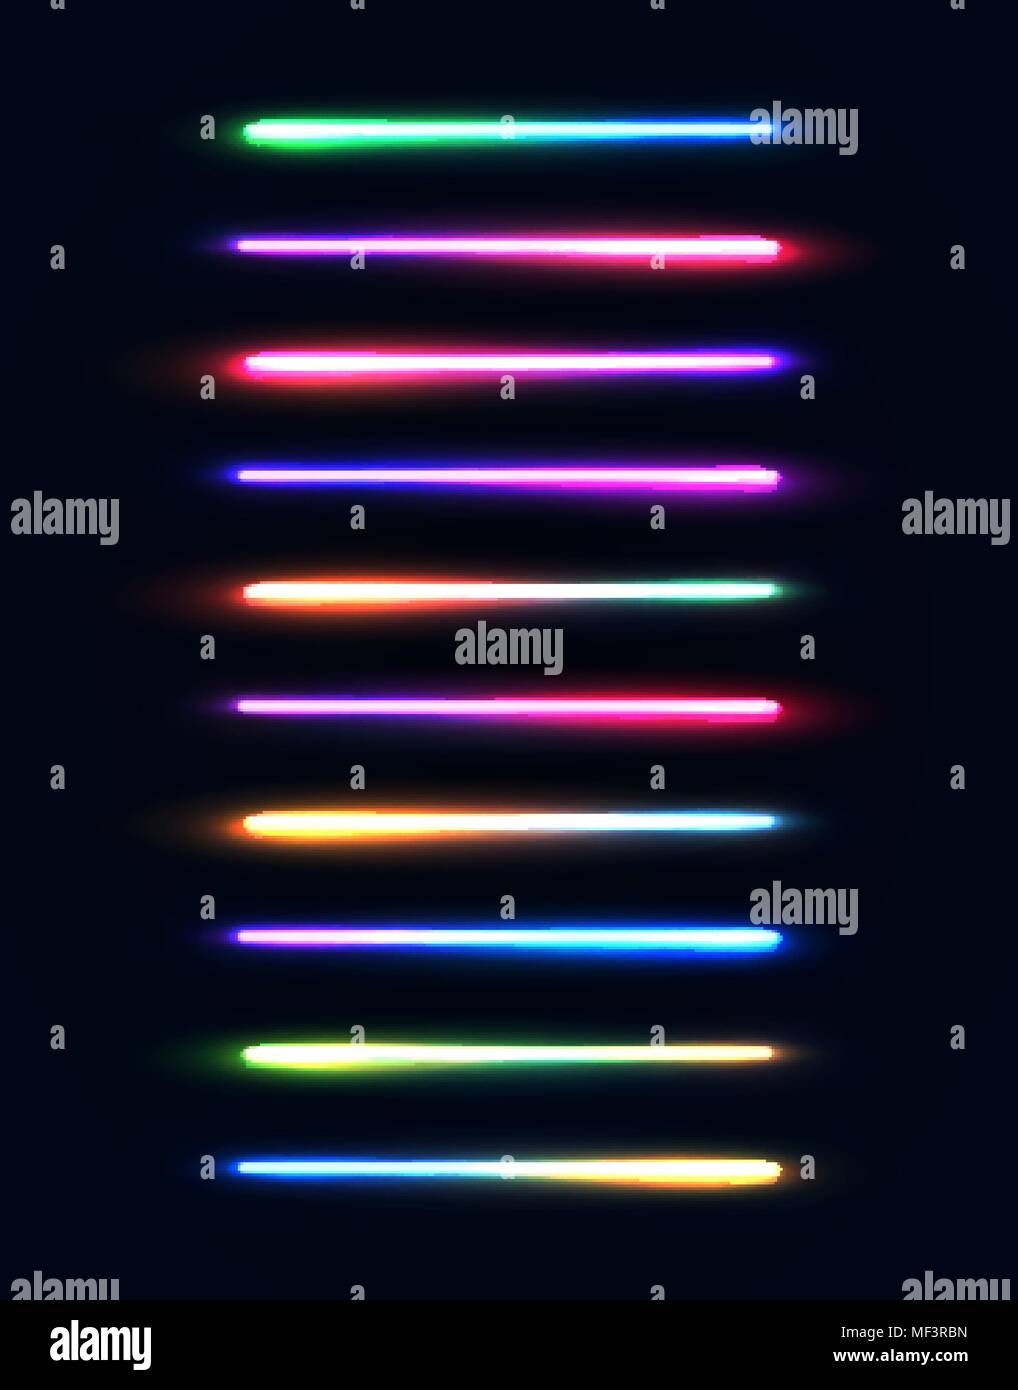 Neon Leuchtröhren eingestellt. Bunt leuchtende Streifen auf dunkelblauem  Hintergrund isoliert. Leuchtende gradient Lampen Elemente Pack für die  Nacht oder Game Design. Farbe hell Vector Illustration Stock-Vektorgrafik -  Alamy